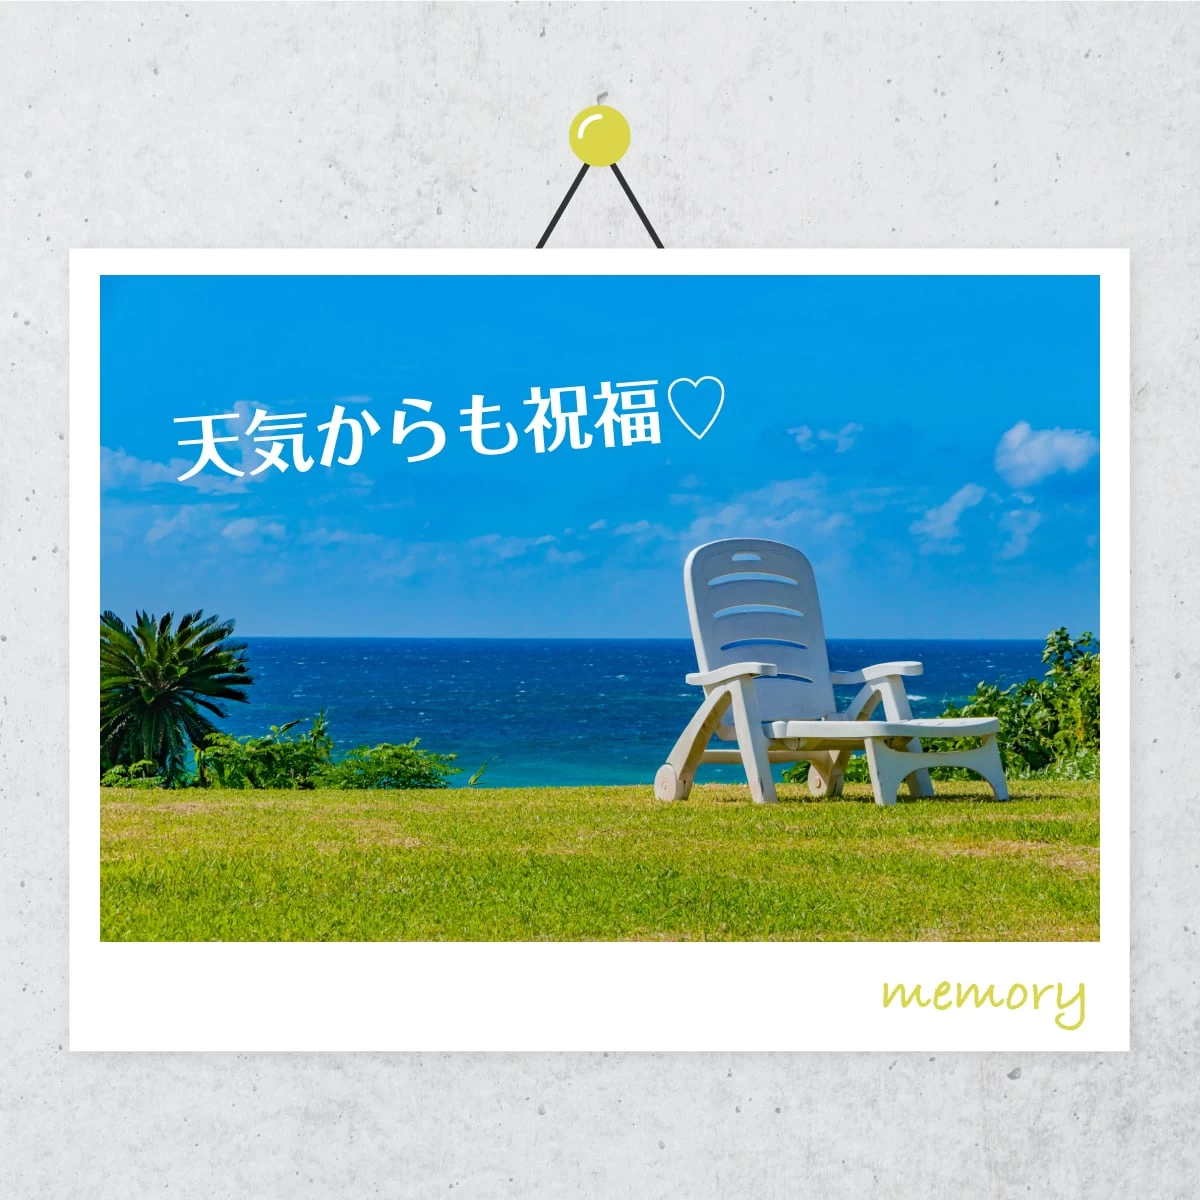 石垣島へ記念日旅行  夫婦で絶景やグルメ満喫